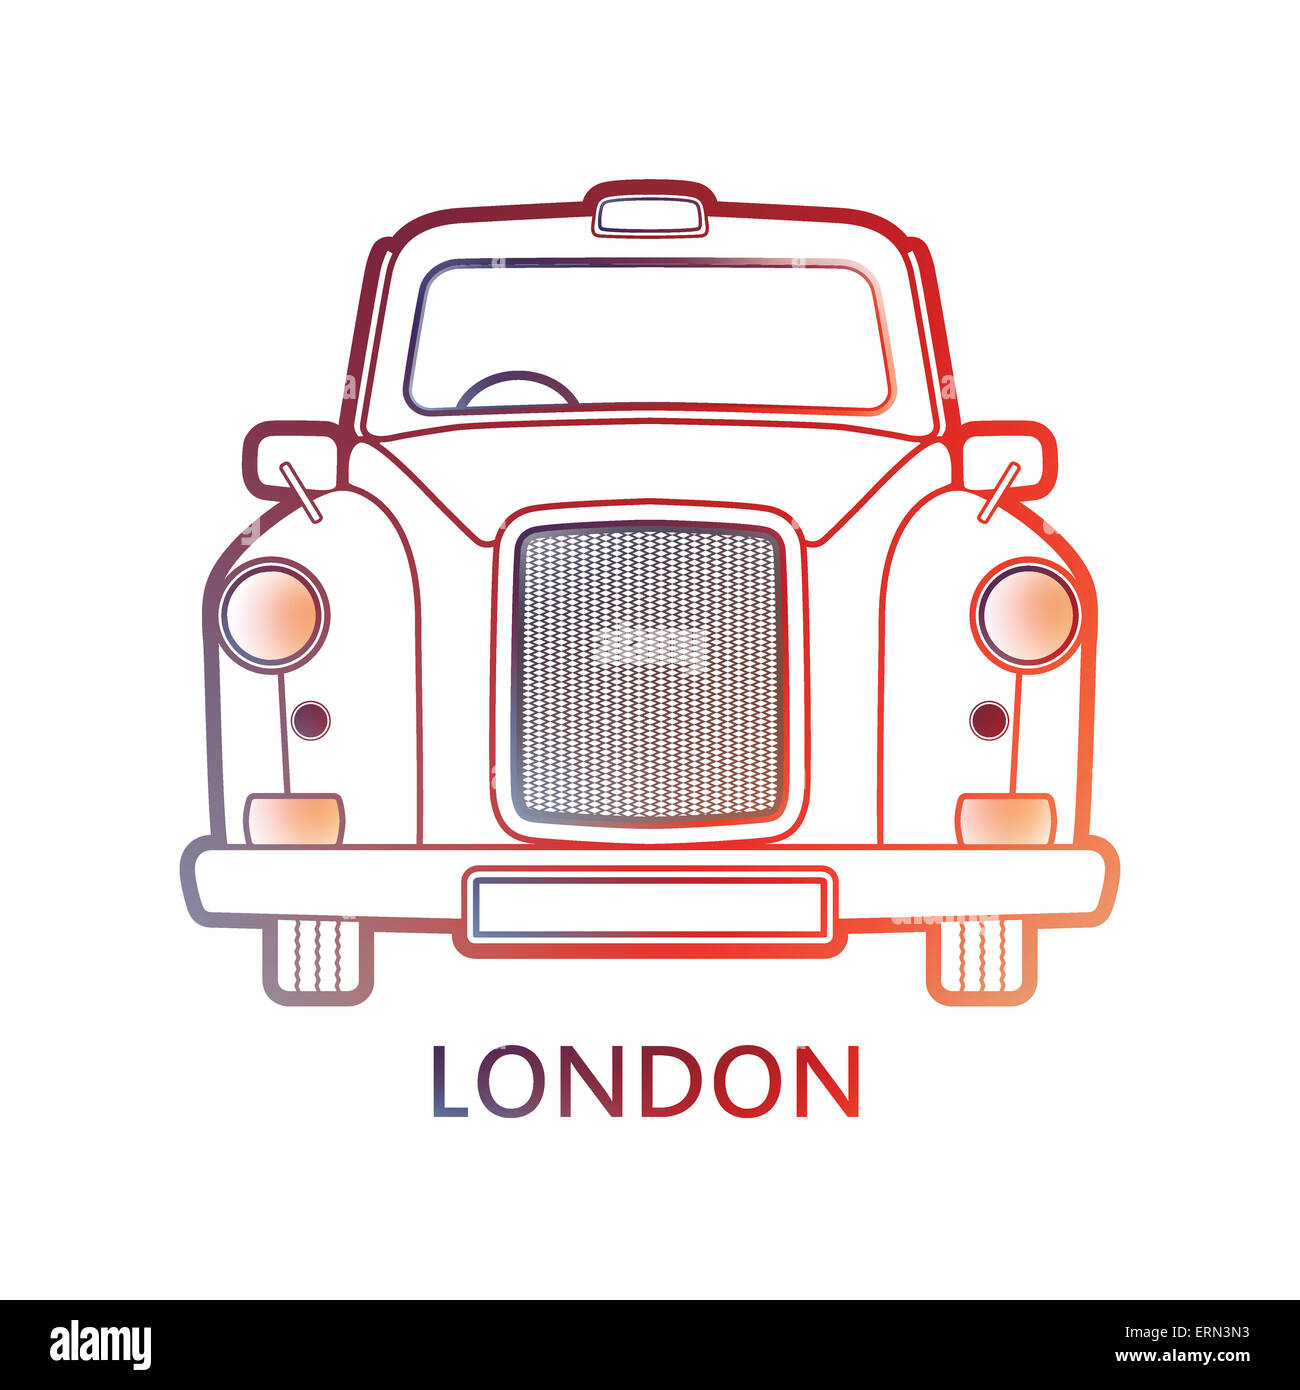 Symbole de Londres - taxi noir et couleur - icône graphique linéaire - contour design moderne - modèle illustration - silhouette Banque D'Images